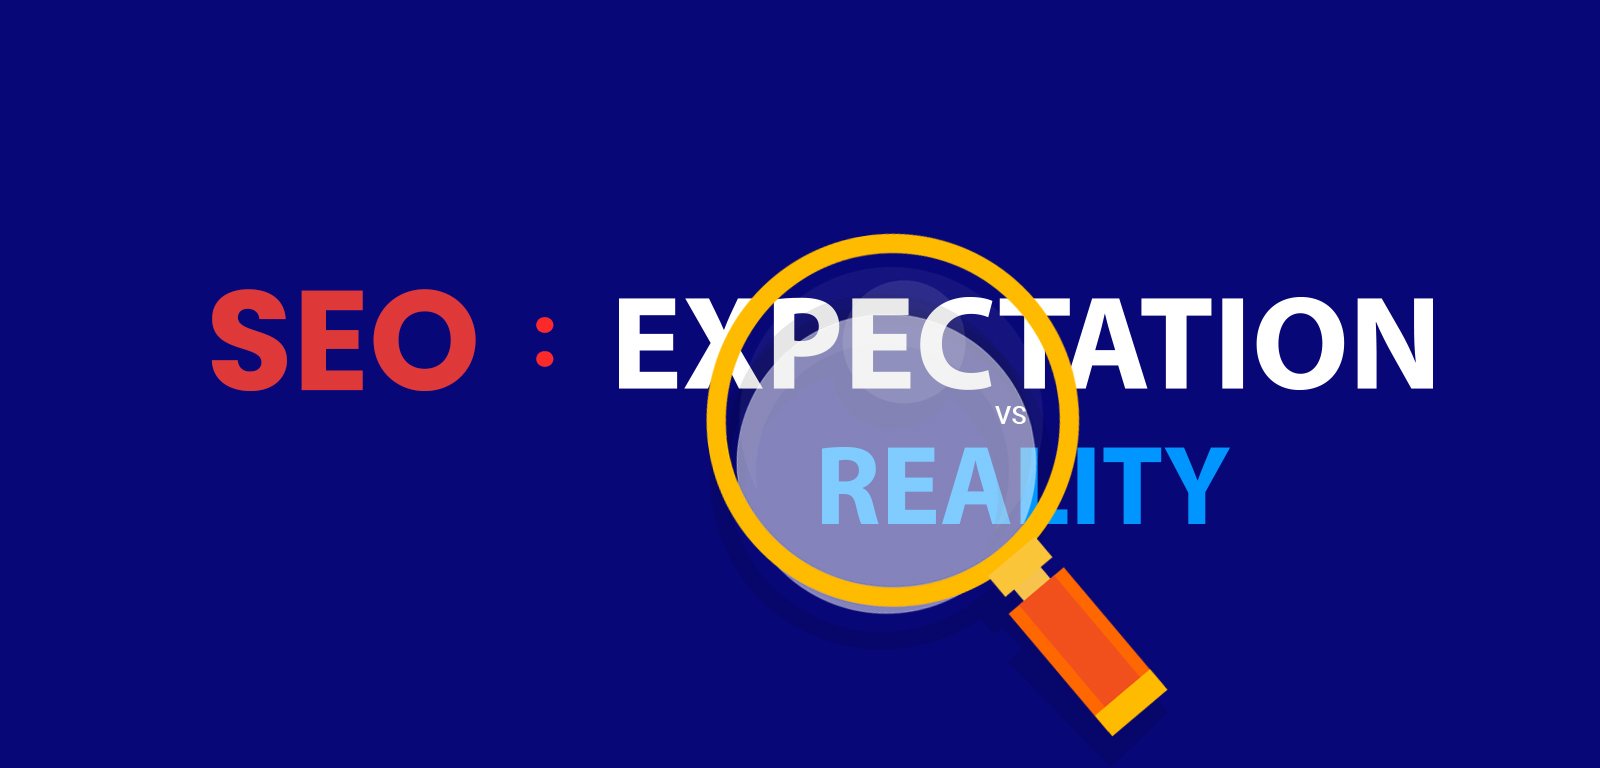 SEO: EXPECTATIONS vs REALITY